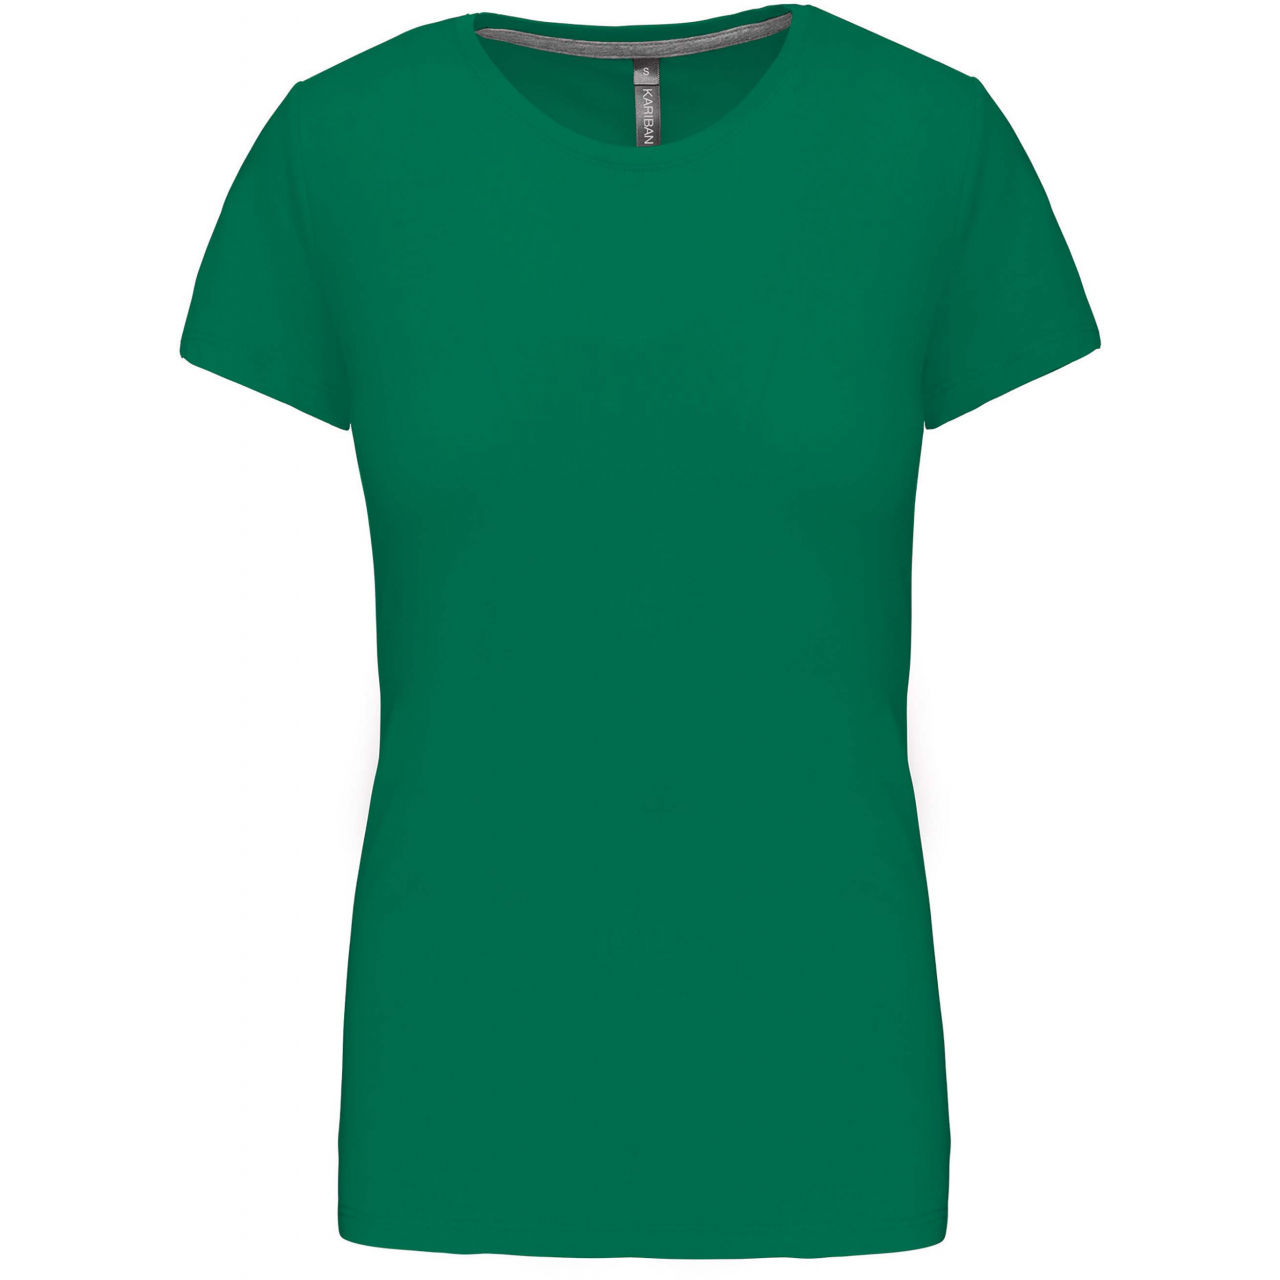 Dámské tričko Kariban s krátkým rukávem - zelené, L